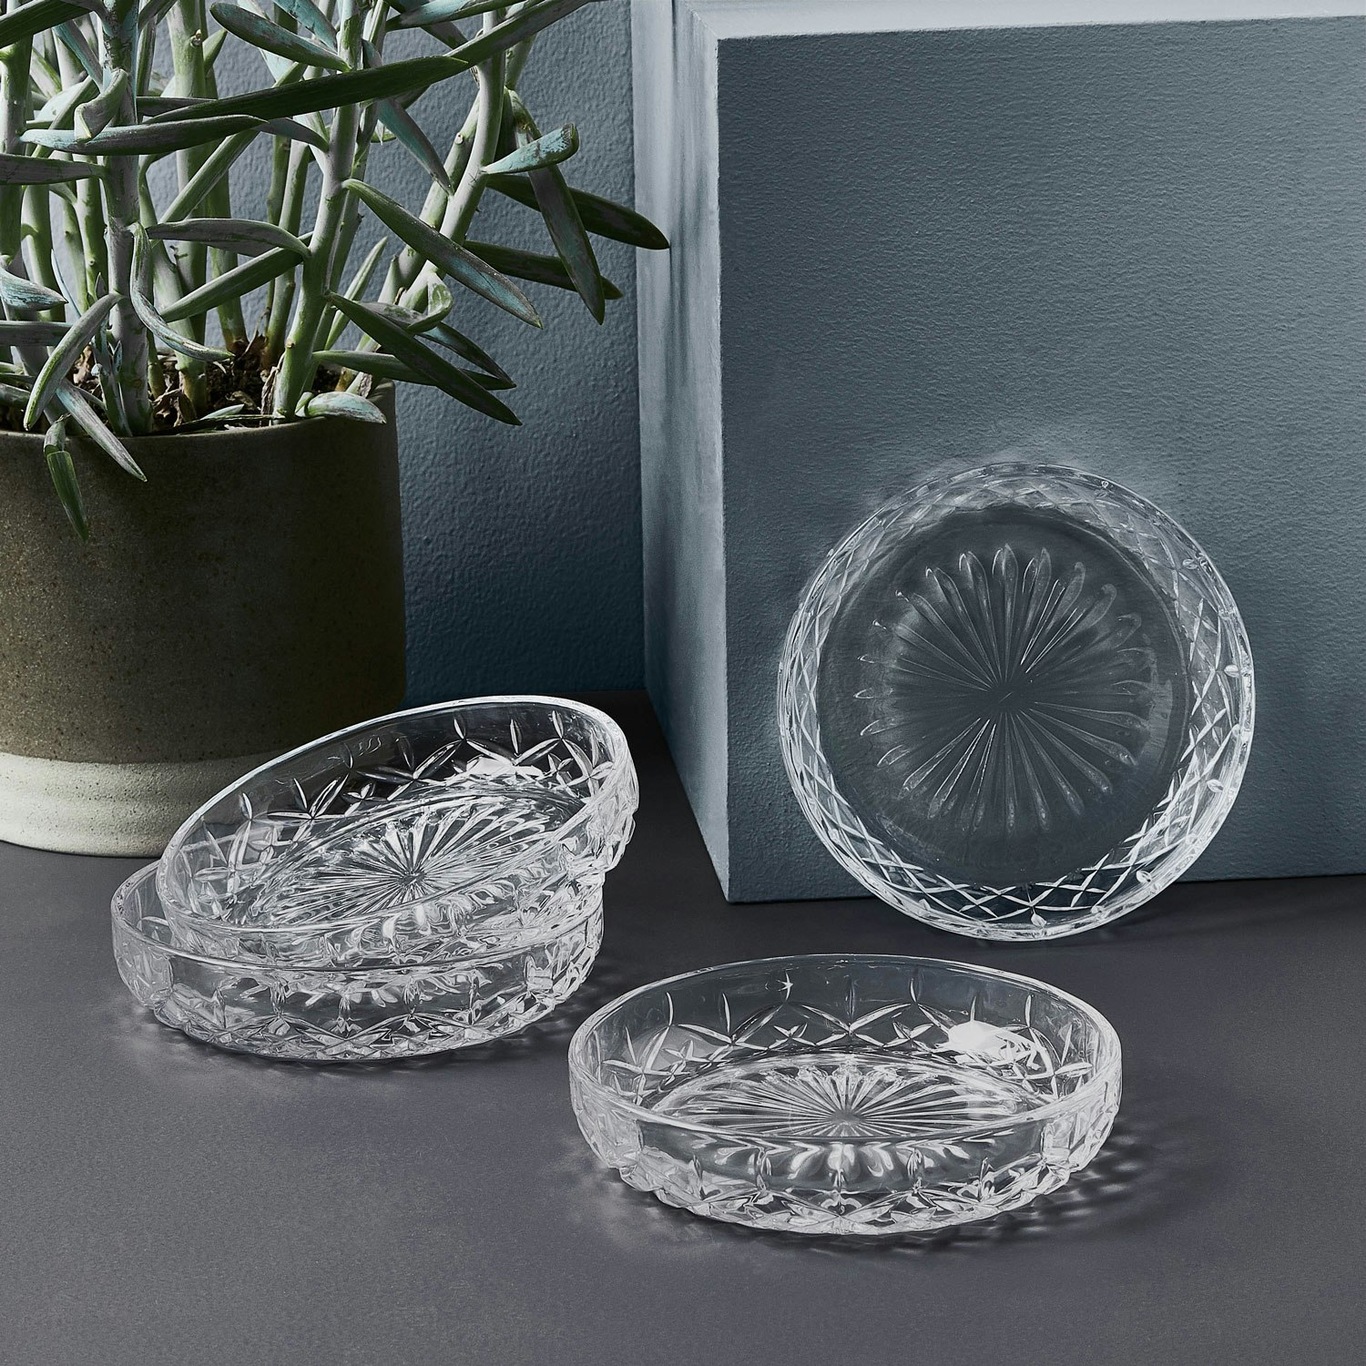 https://royaldesign.com/image/2/aida-harvey-bowls-4-pack-16-cm-0?w=800&quality=80